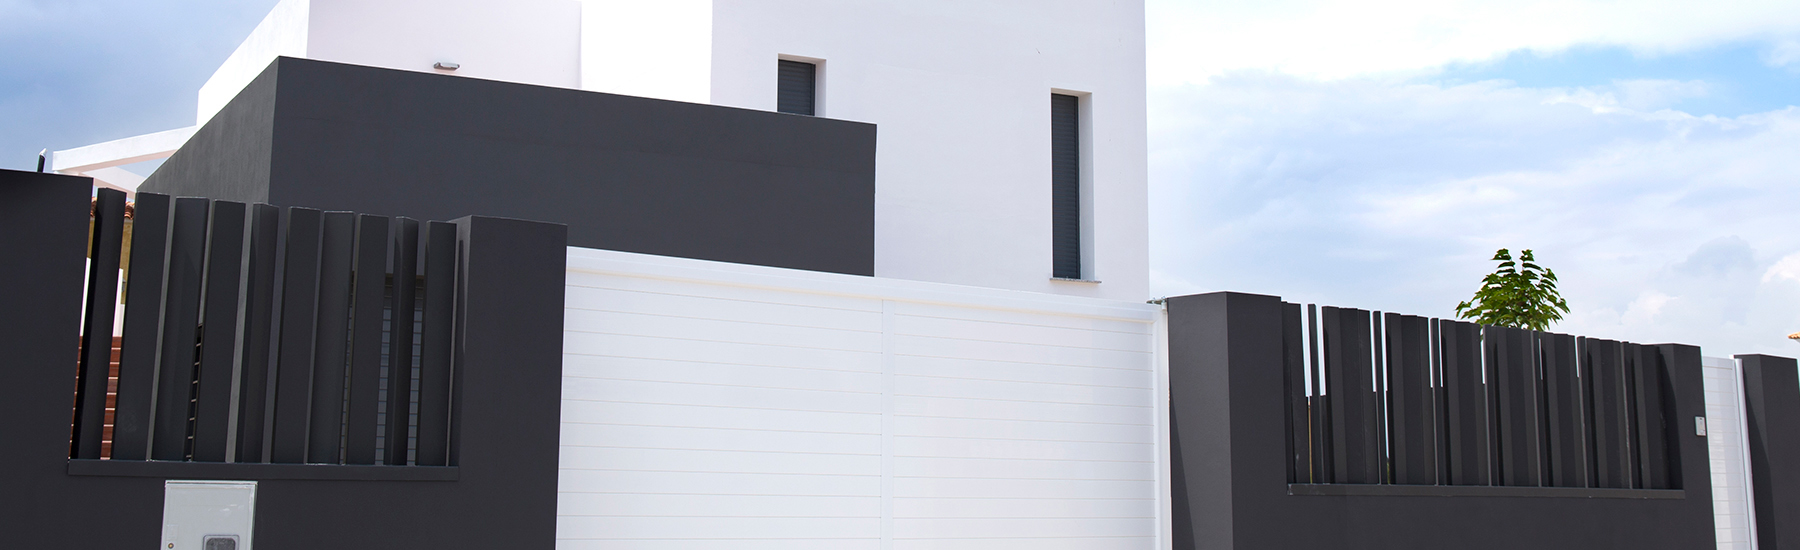 Portes d'accés a un habitatge unifamiliar realitzades en alumini lacat en blanc